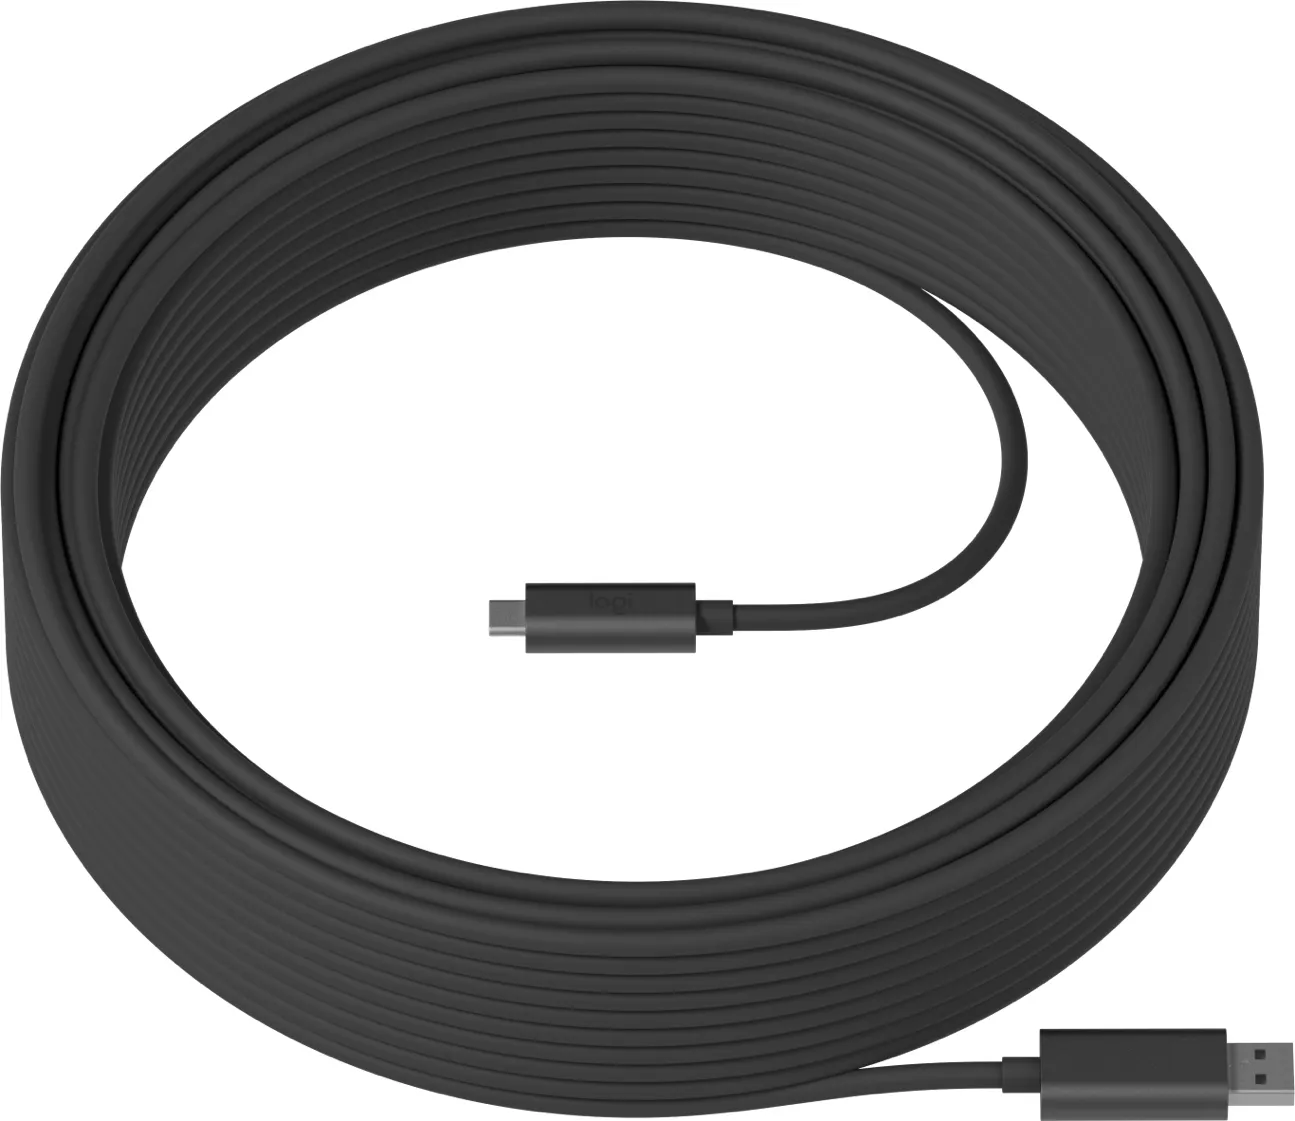 Vente LOGITECH Strong USB cable USB Type A M Logitech au meilleur prix - visuel 2